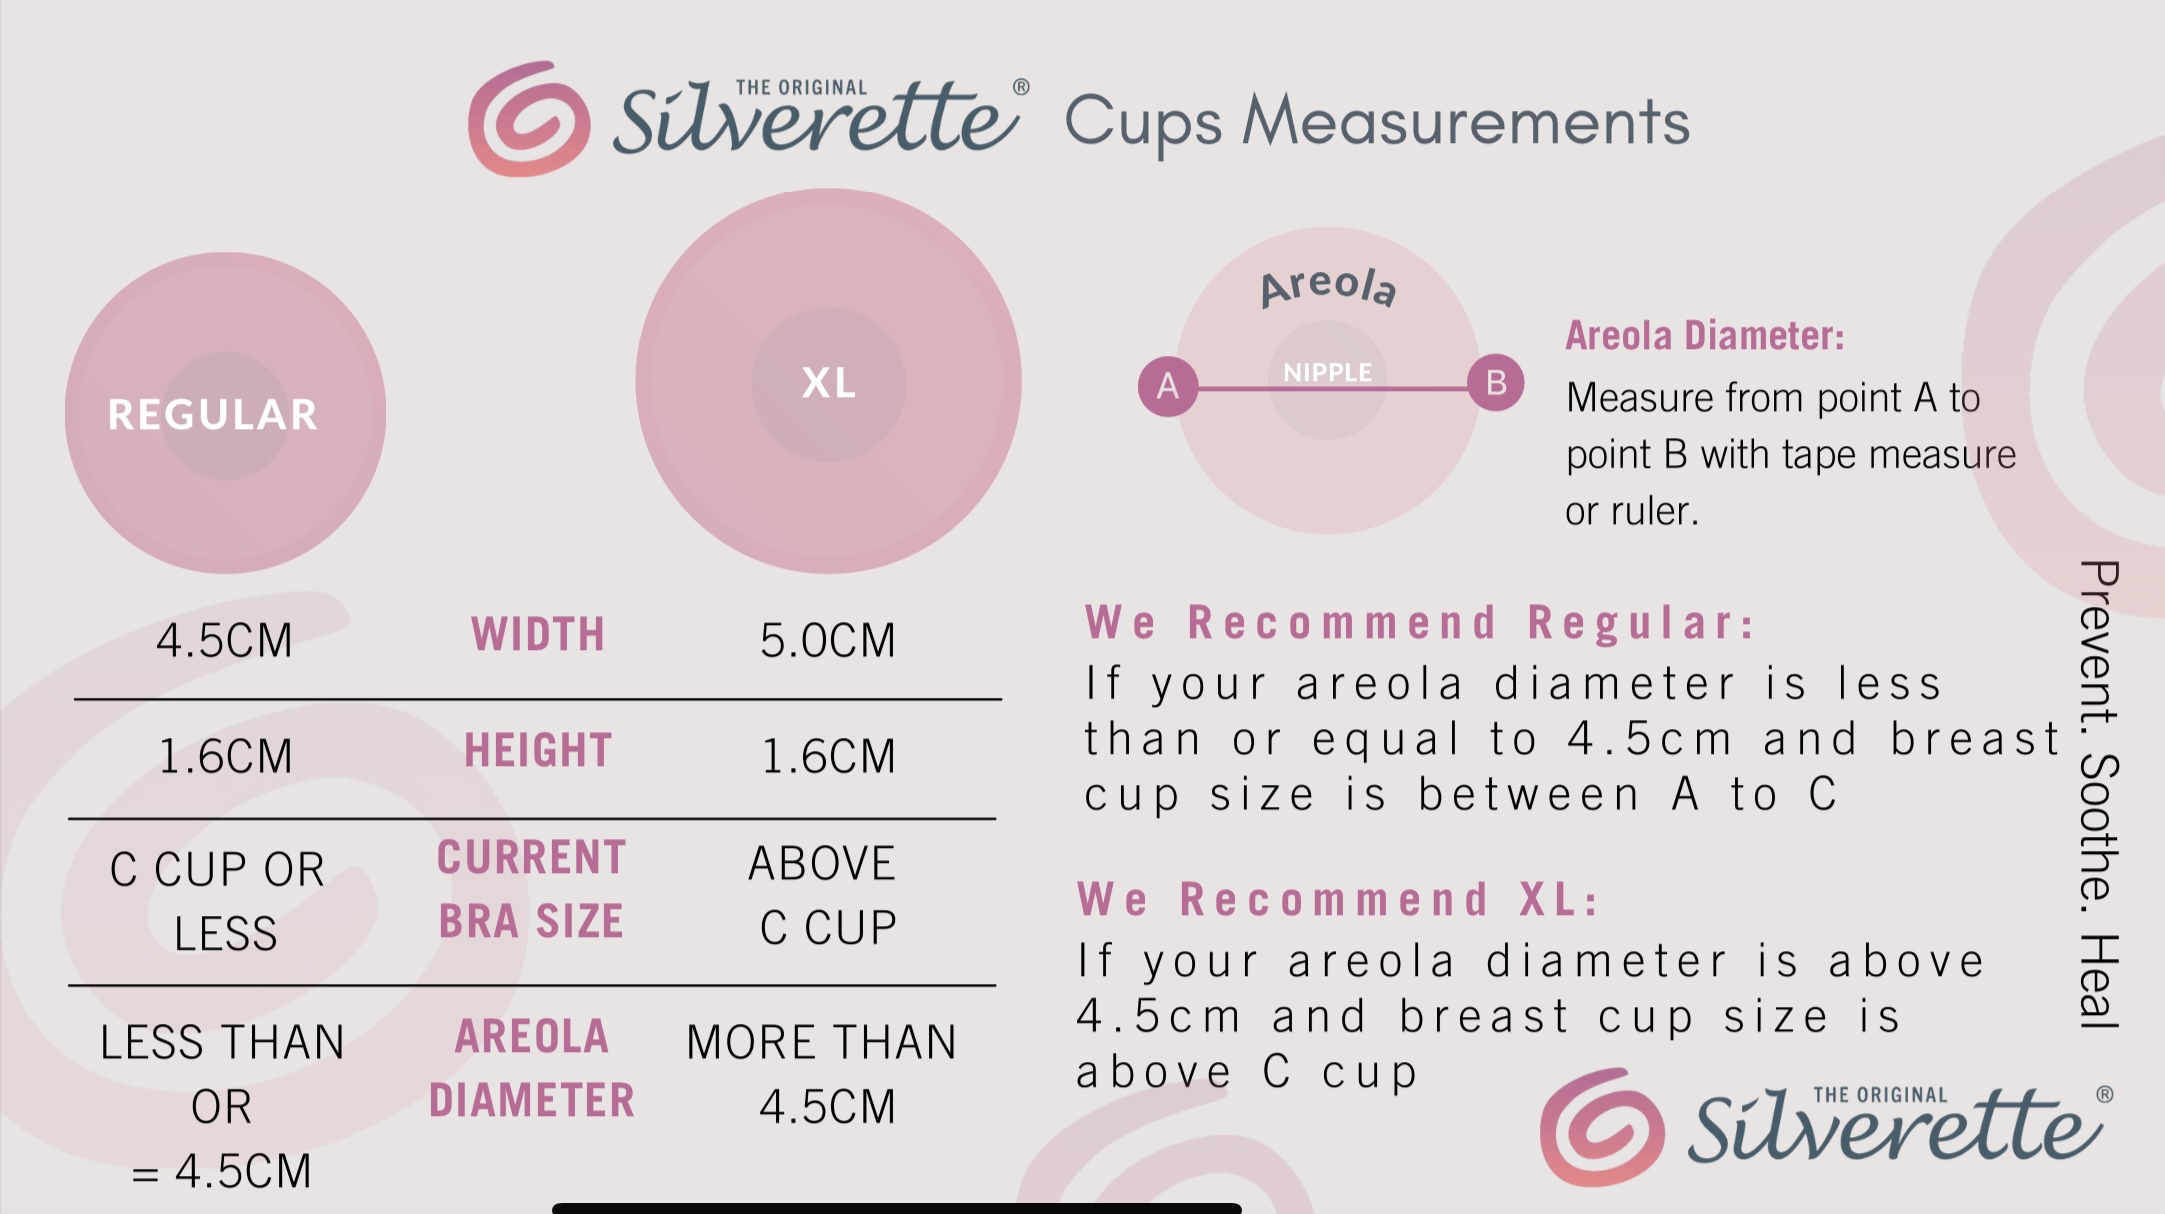 Silverette - Silver Nursing Cups W/ O-Feel - XL